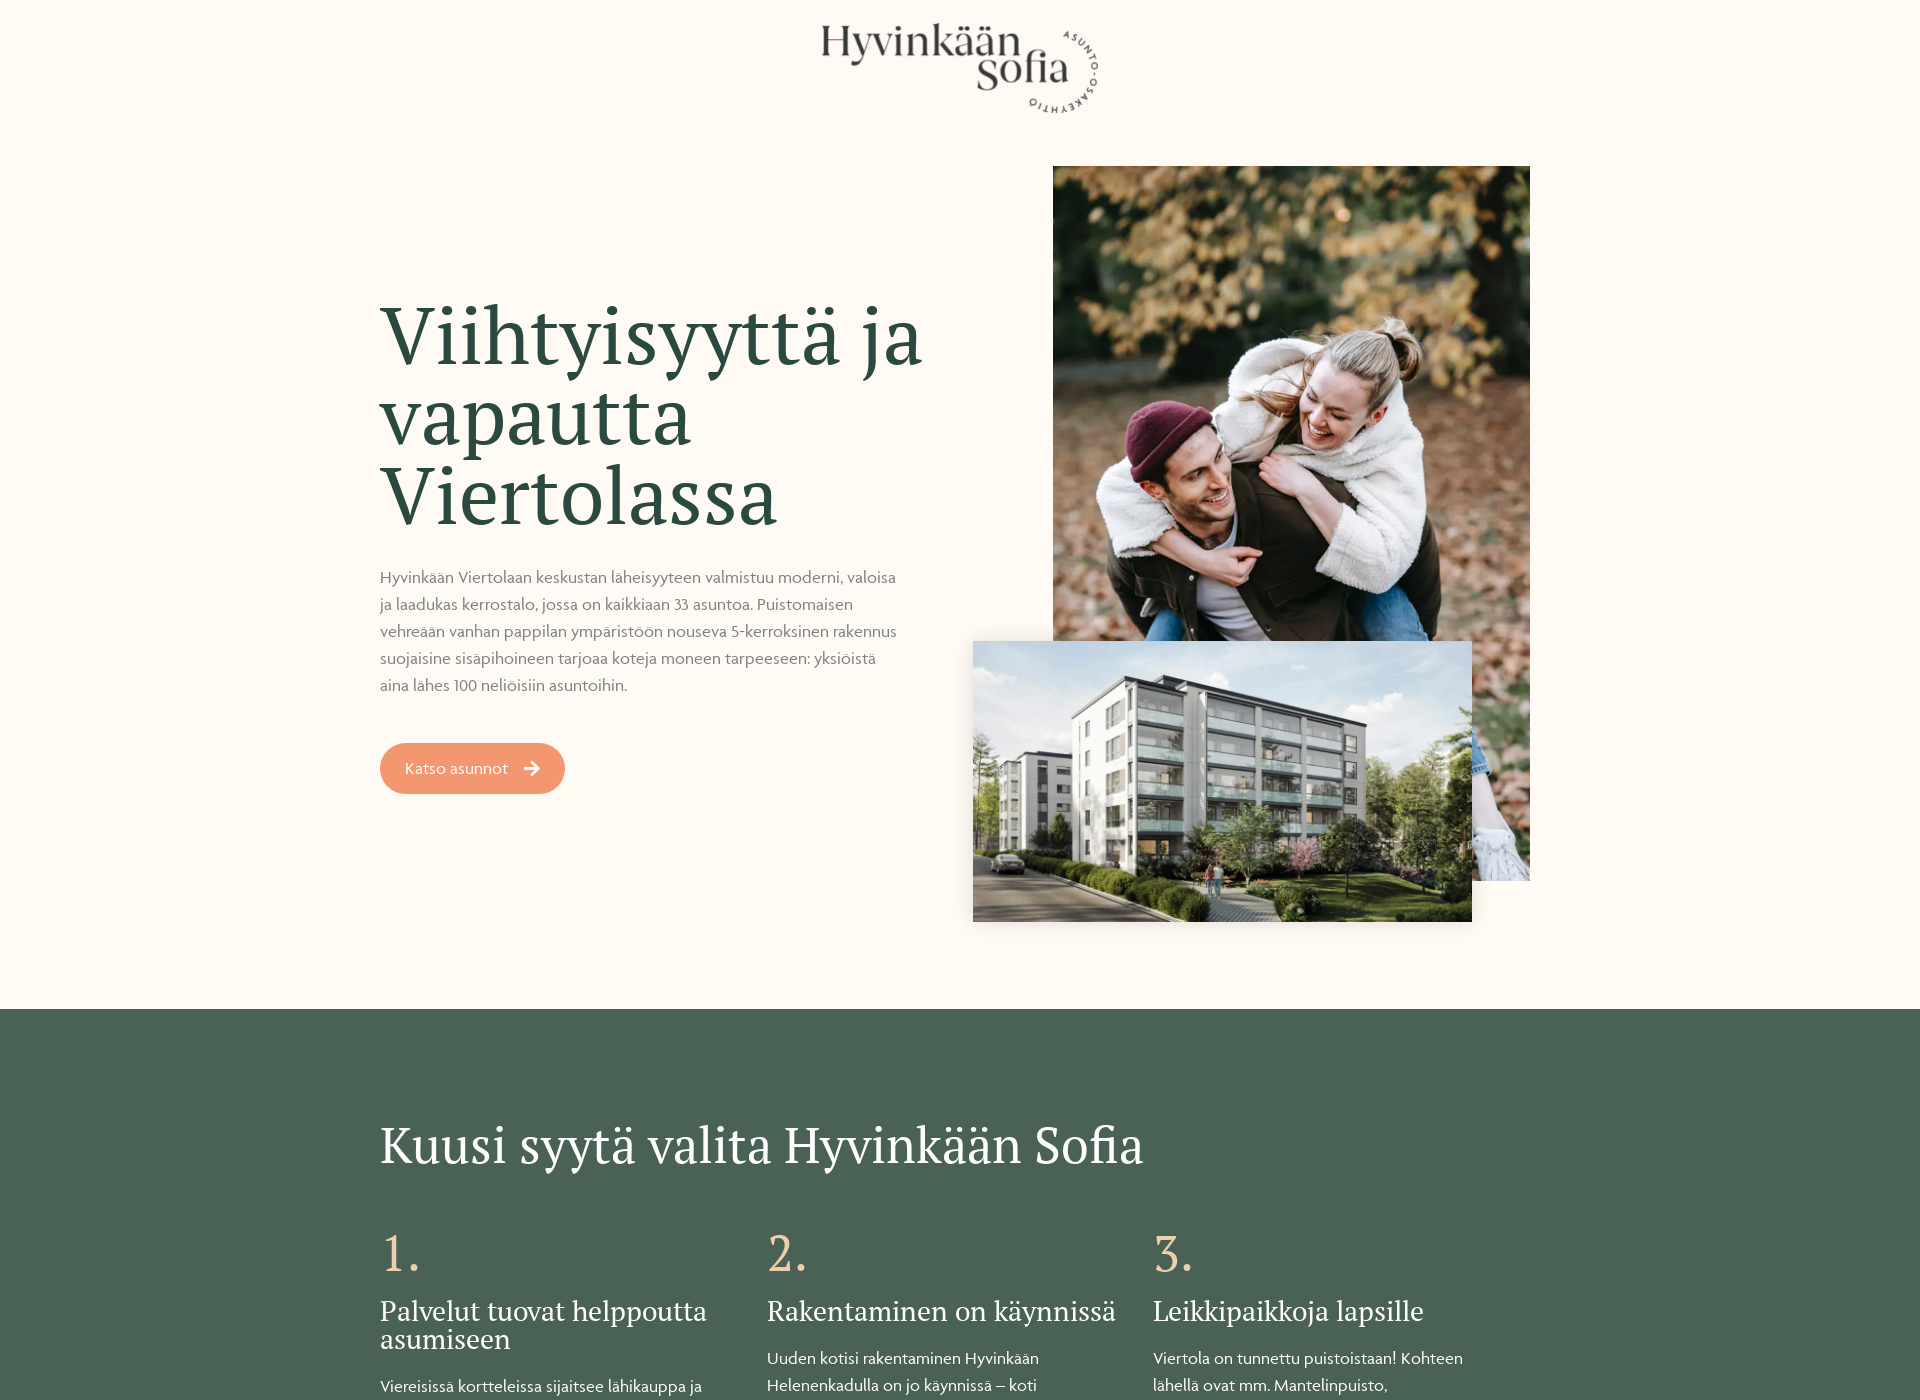 Näyttökuva hyvinkaansofia.fi